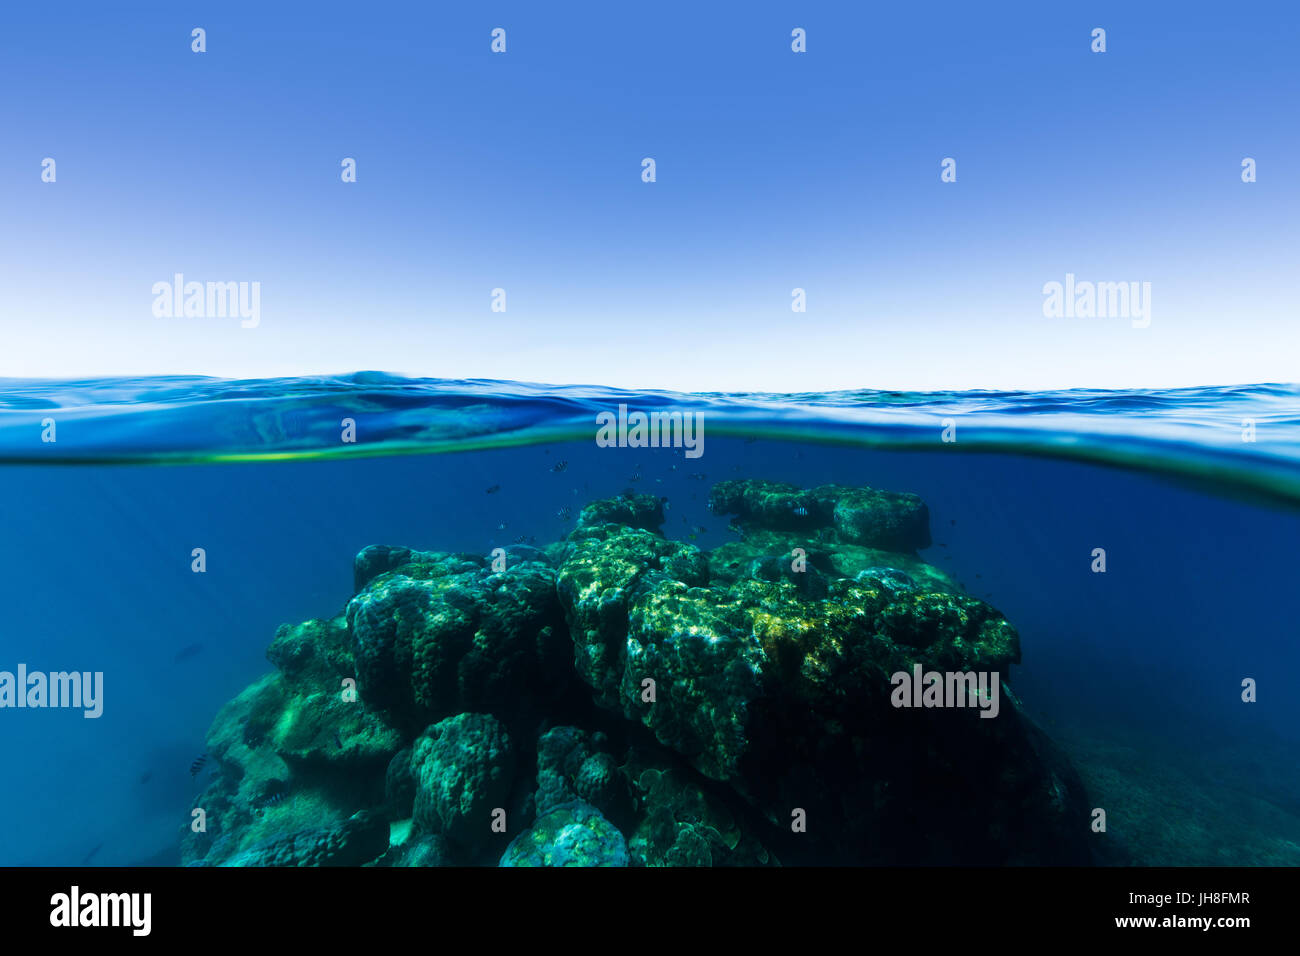 Un sotto sopra split shot di una barriera corallina che sorge fuori di profonda, chiara acqua blu in una giornata di sole sulla grande barriera corallina. Foto Stock